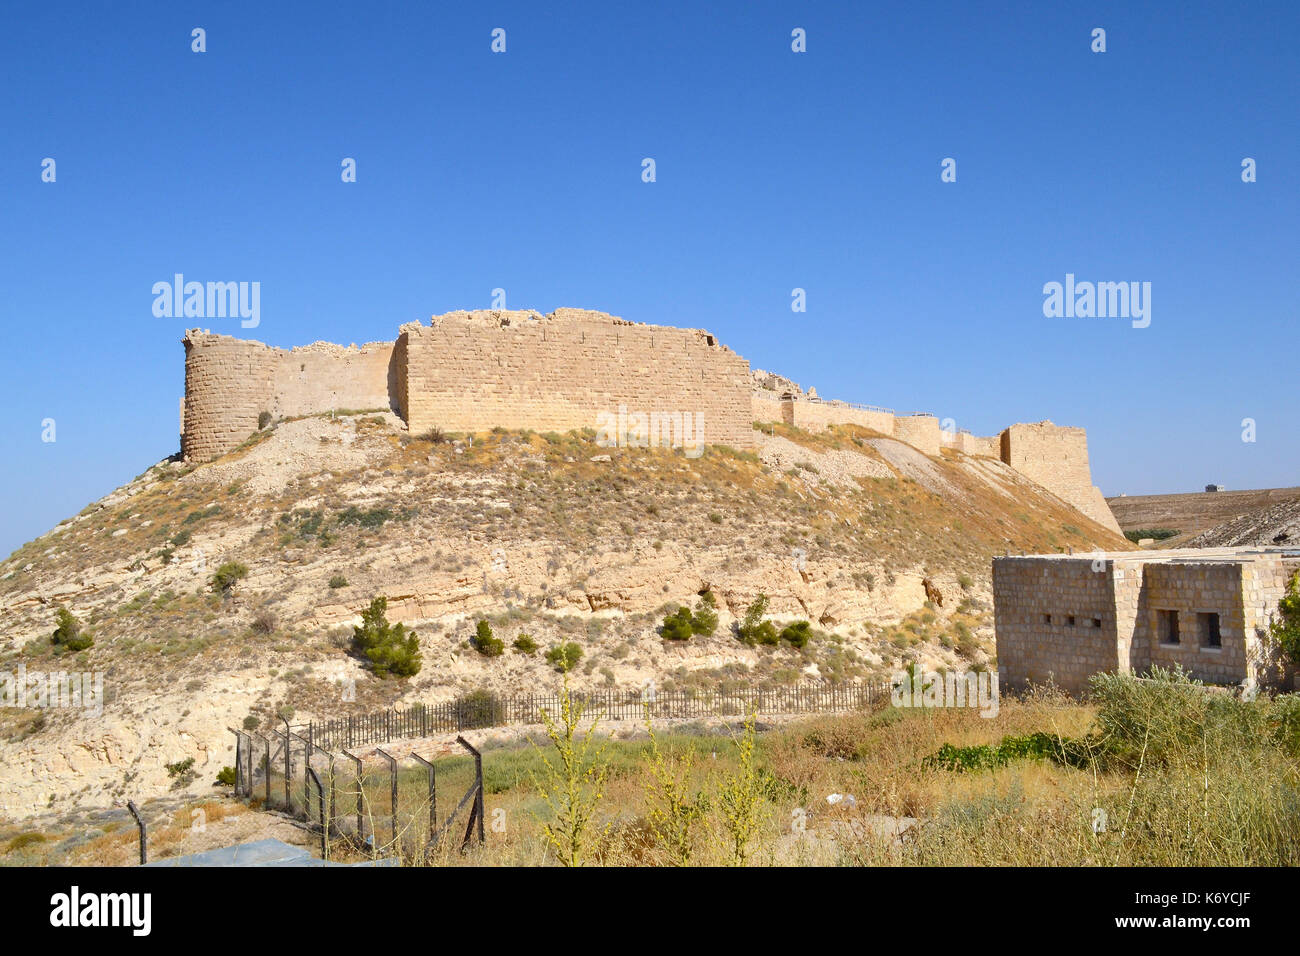 Cenere castello shubak, Giordania. Il castello è un popolare punto di sosta sulla strada per Petra. Foto Stock